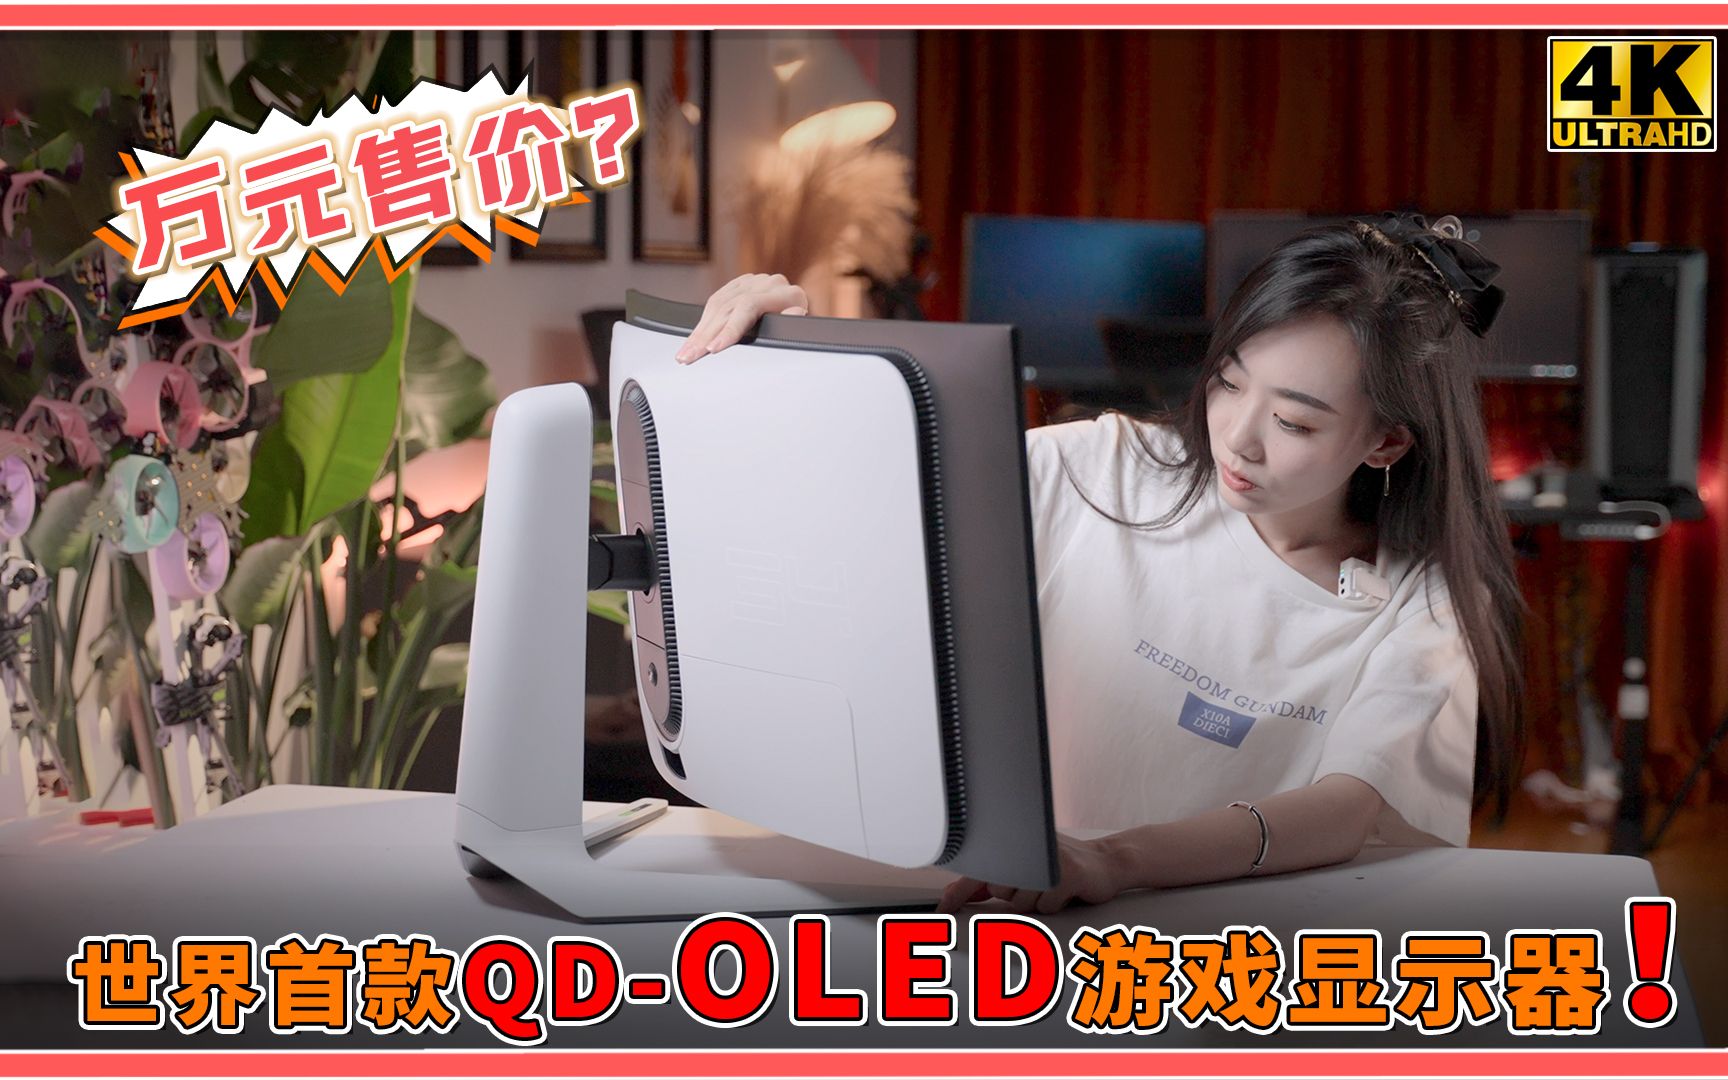 世界首款？体验QD-OLED游戏显示器！万元价位色域高刷全都要！【B站限定抽奖】